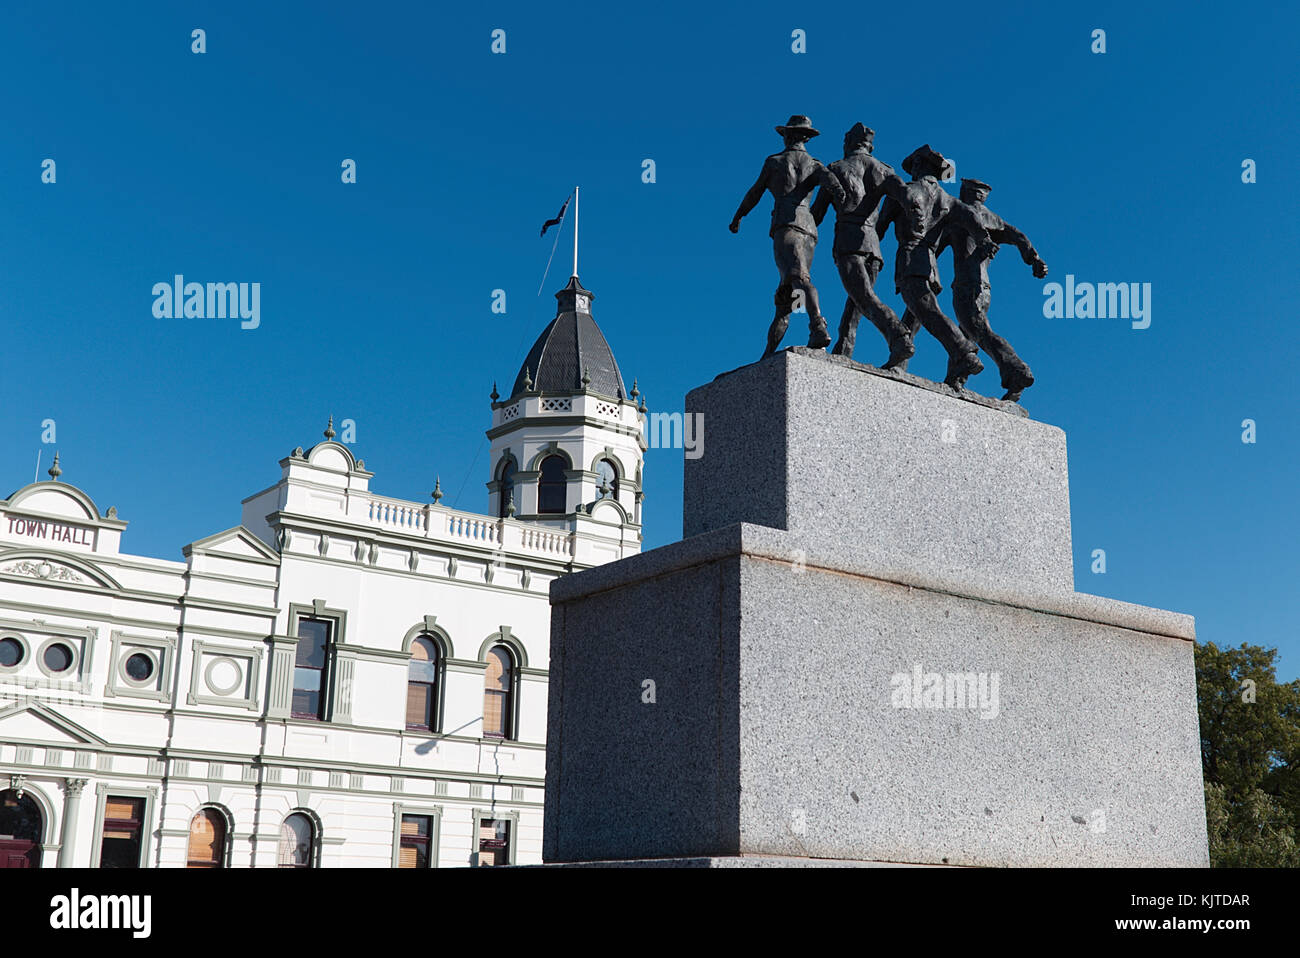 Este War Memorial en Forbes fue realmente muy impresionante con estos soldados marchando sobre el monumento. Forbes New South Wales Australia Foto de stock